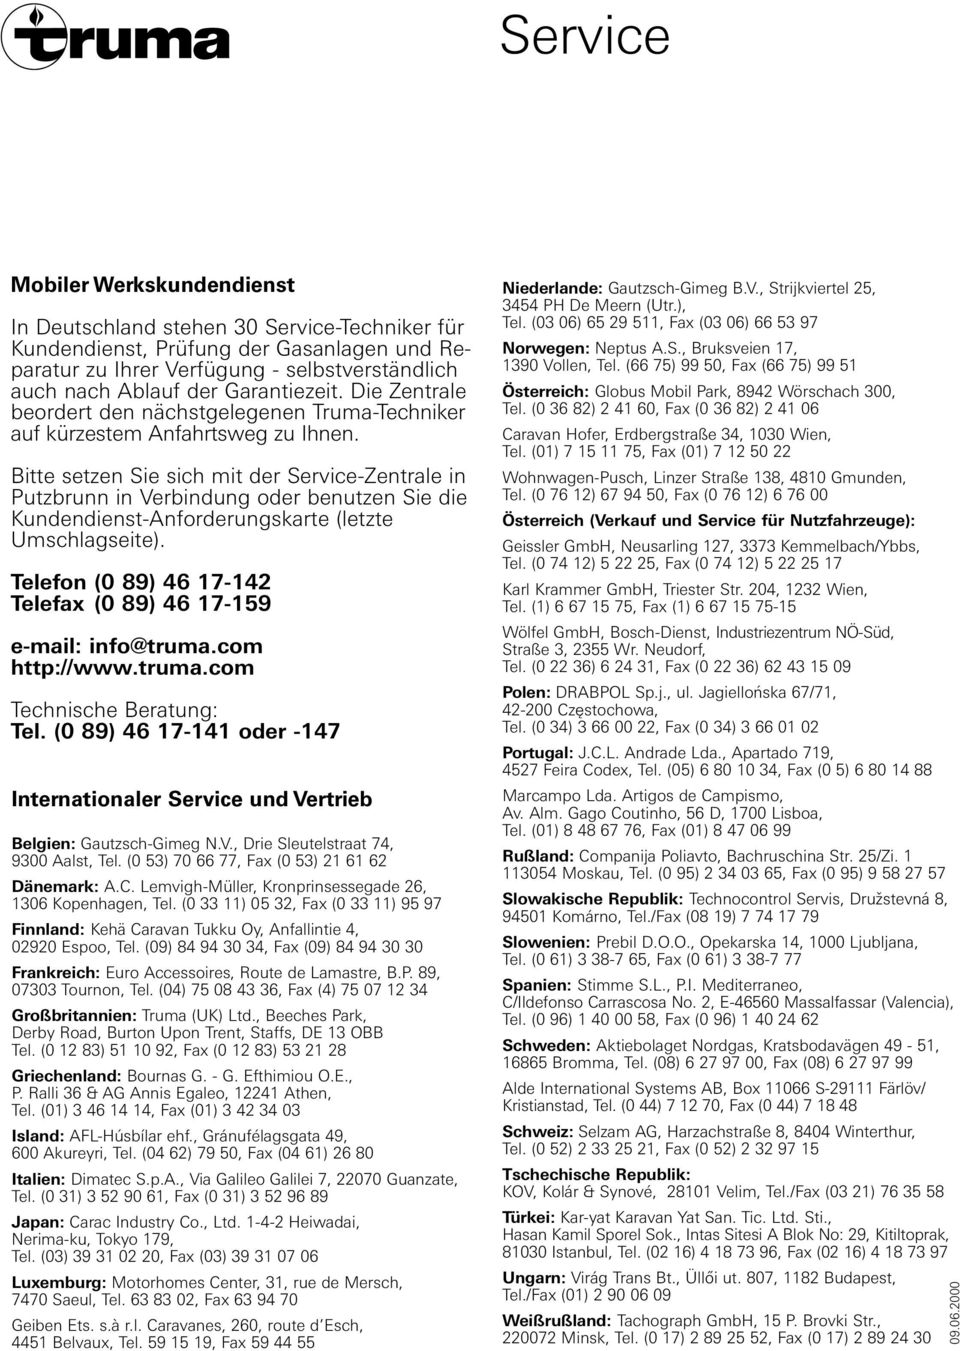 die Kundendienst-Anforderungskarte (letzte Umschlagseite) Telefon (0 9) 6 7- Telefax (0 9) 6 7-59 e-mail: info@trumacom http://wwwtrumacom Technische Beratung: Tel (0 9) 6 7- oder -7 Internationaler